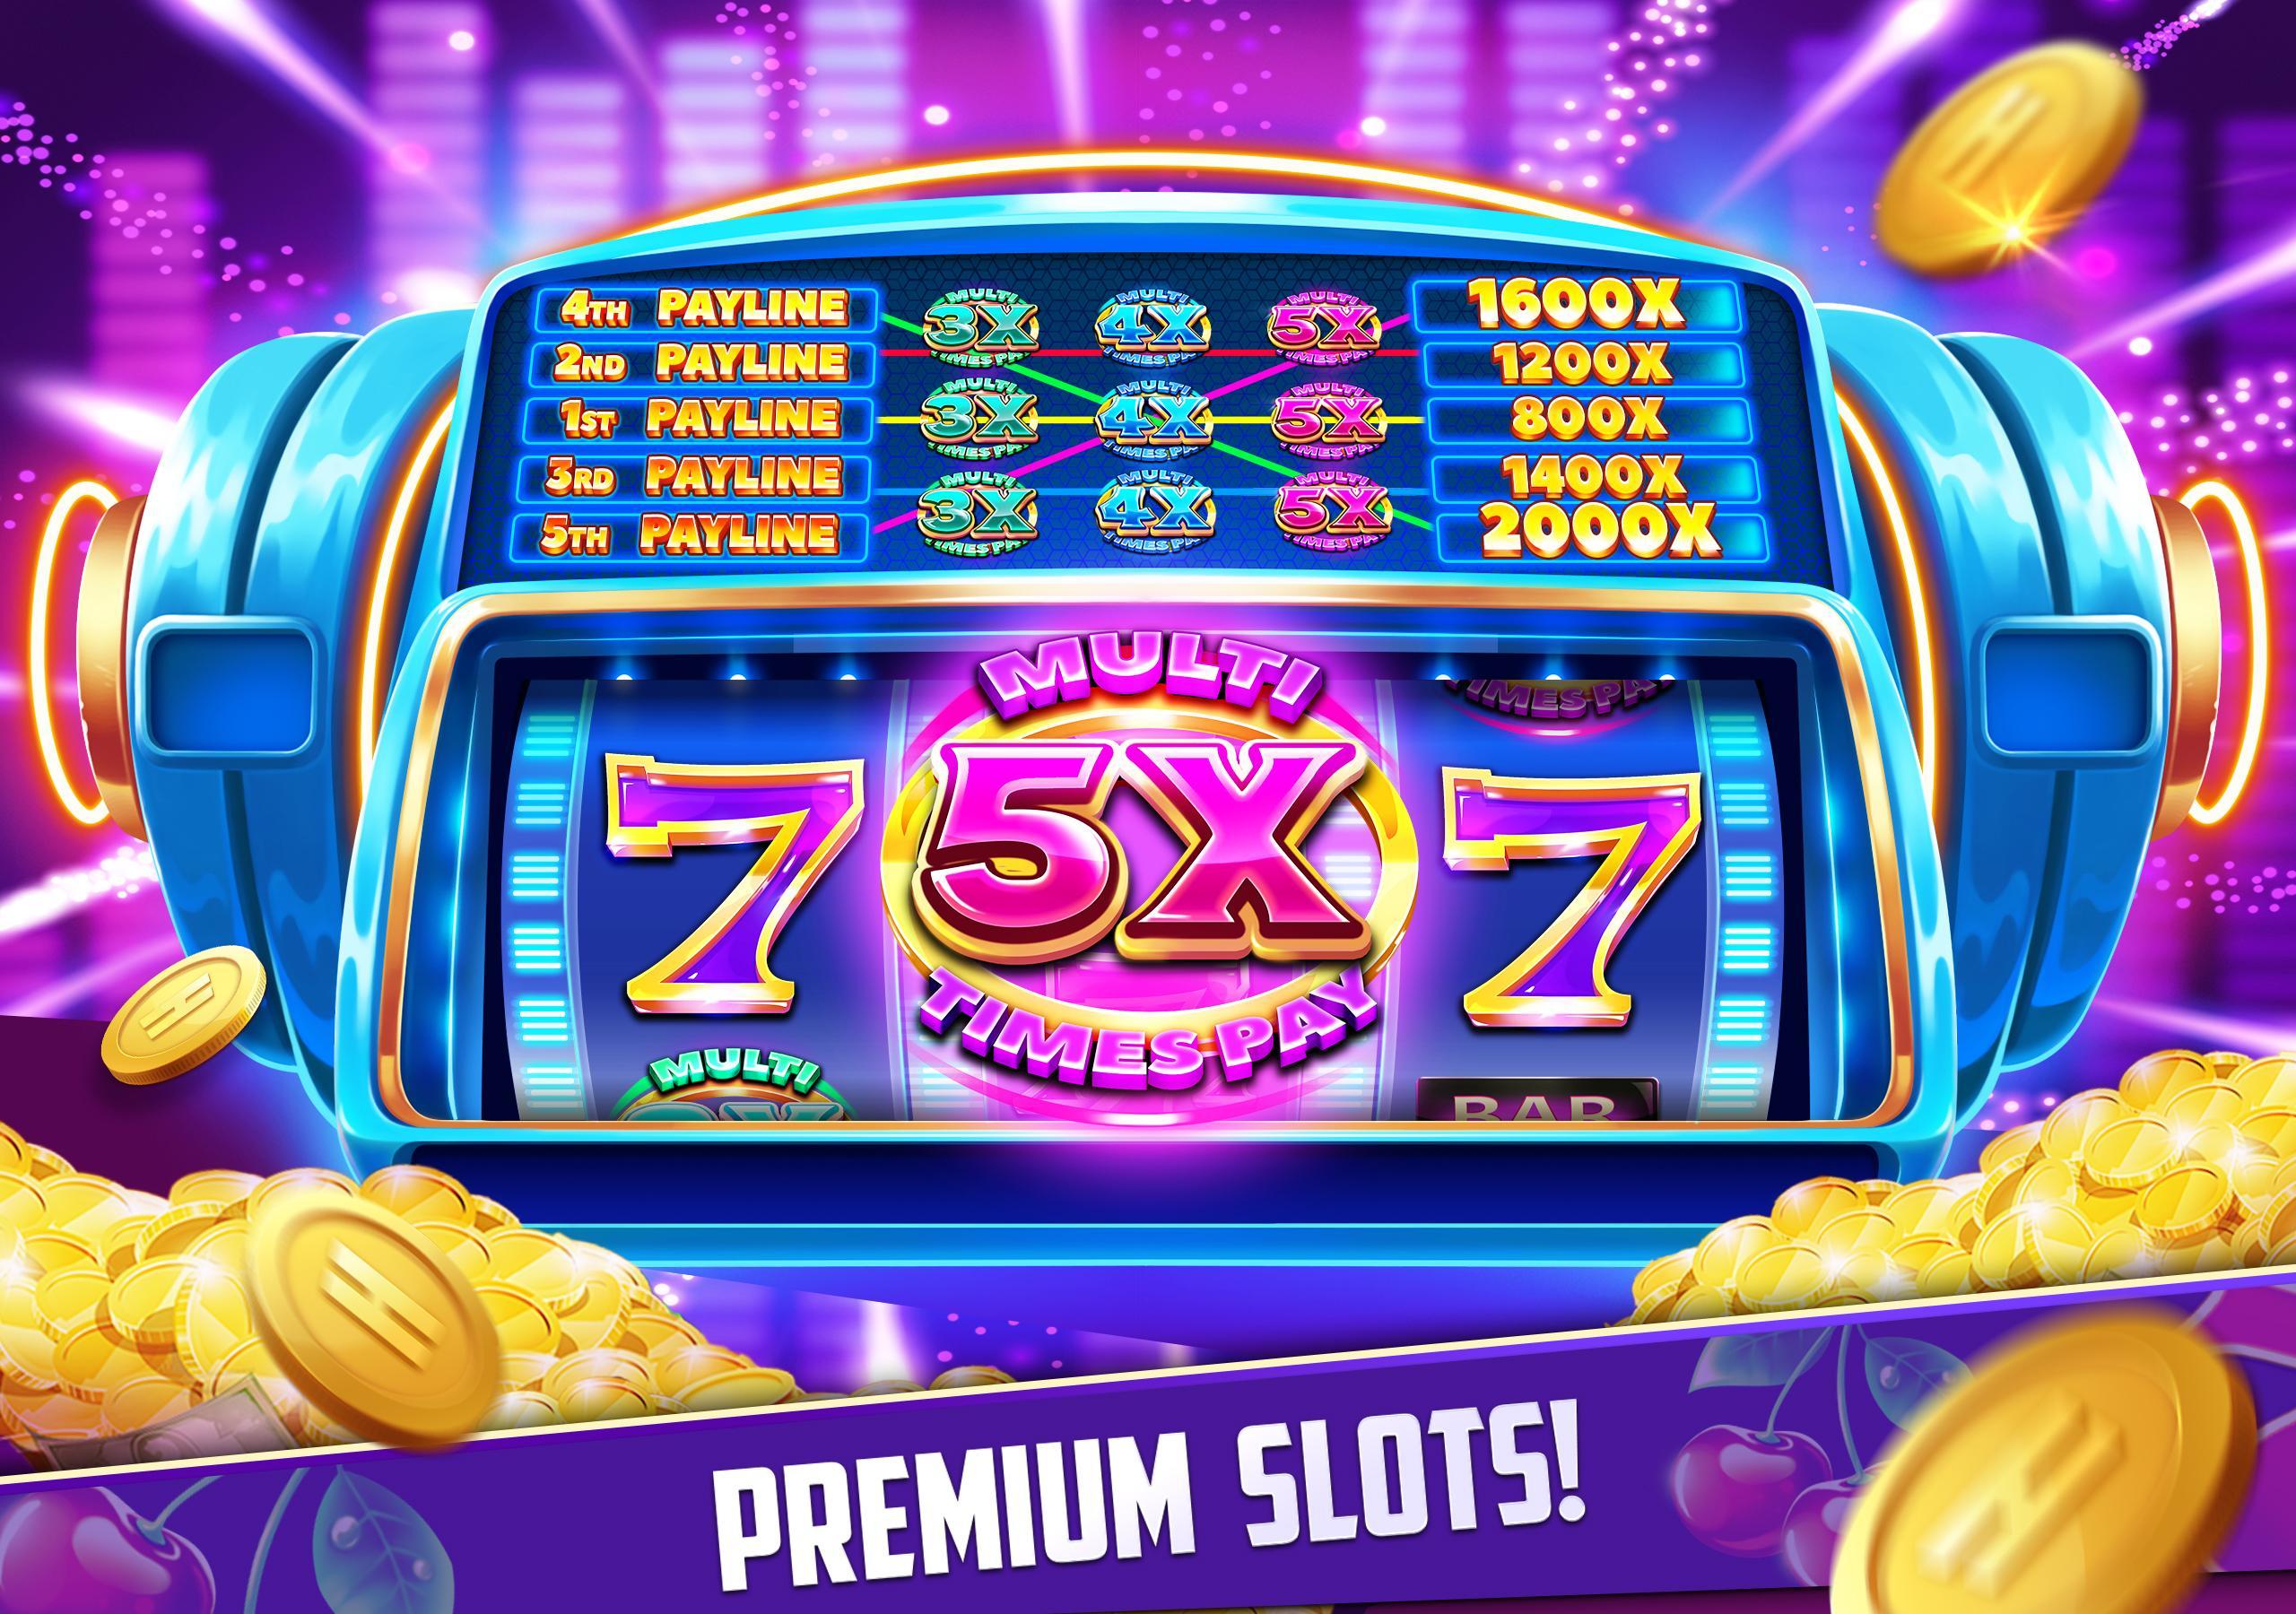 Stars Slots Casino - Vegas Slot Machines 1.0.1366 Screenshot 9